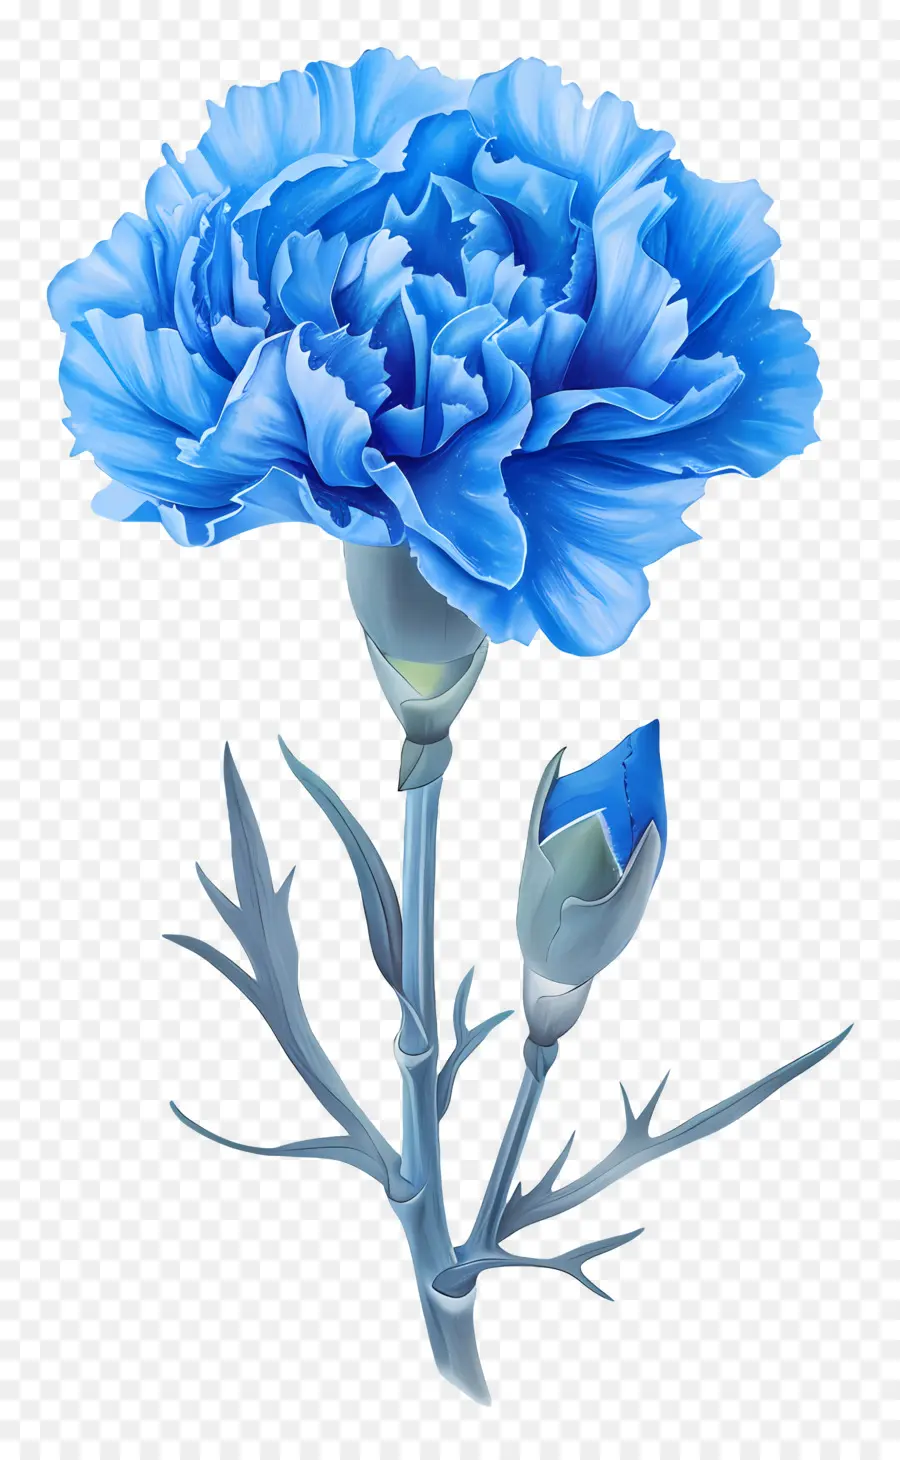 carnation blue blue carnation flower bloom petals